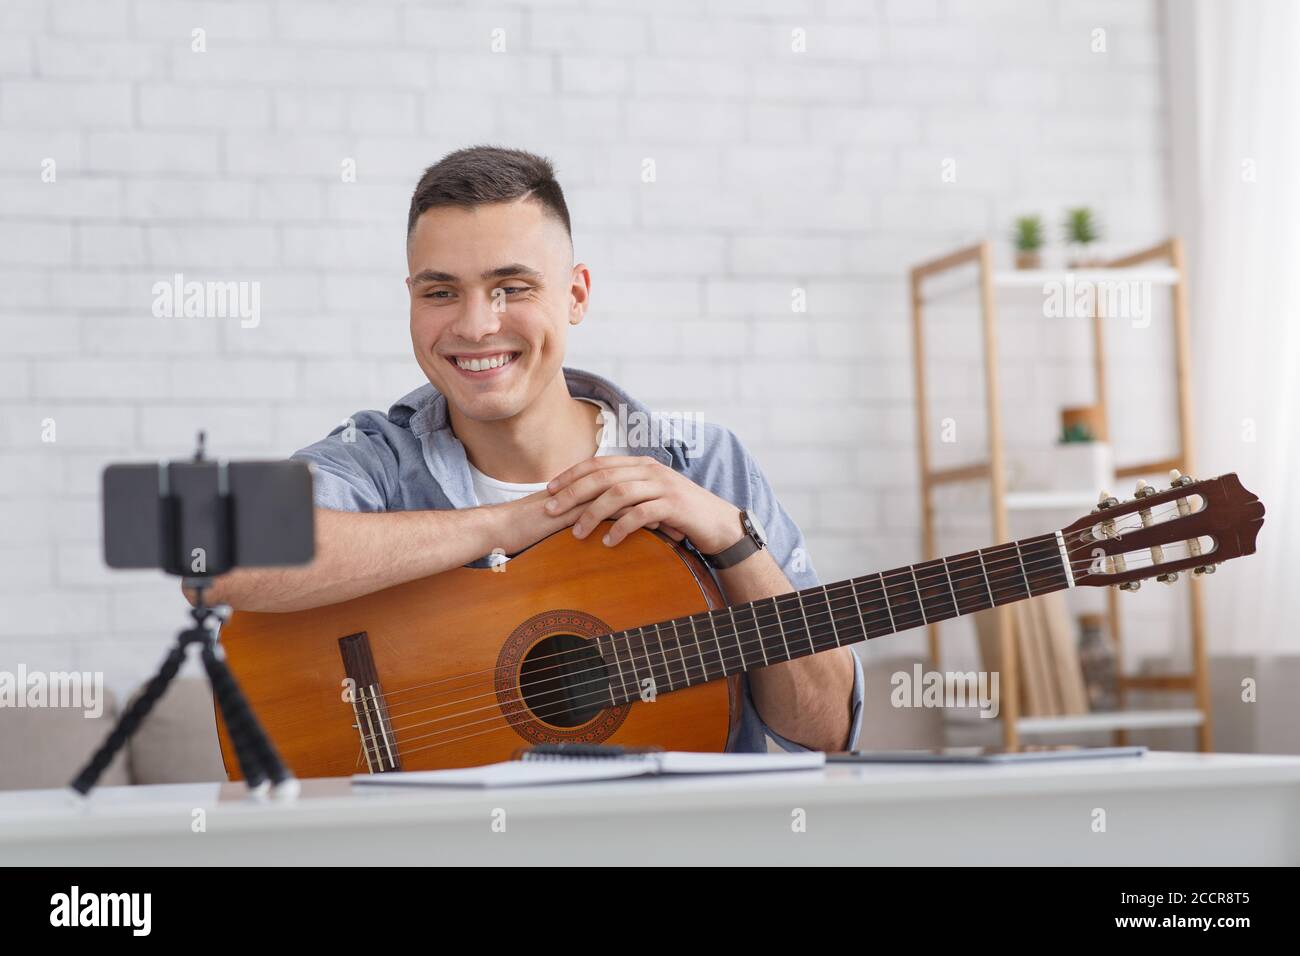 Lezione di musica online. Un ragazzo sorridente con la chitarra guarda alla fotocamera dello smartphone Foto Stock